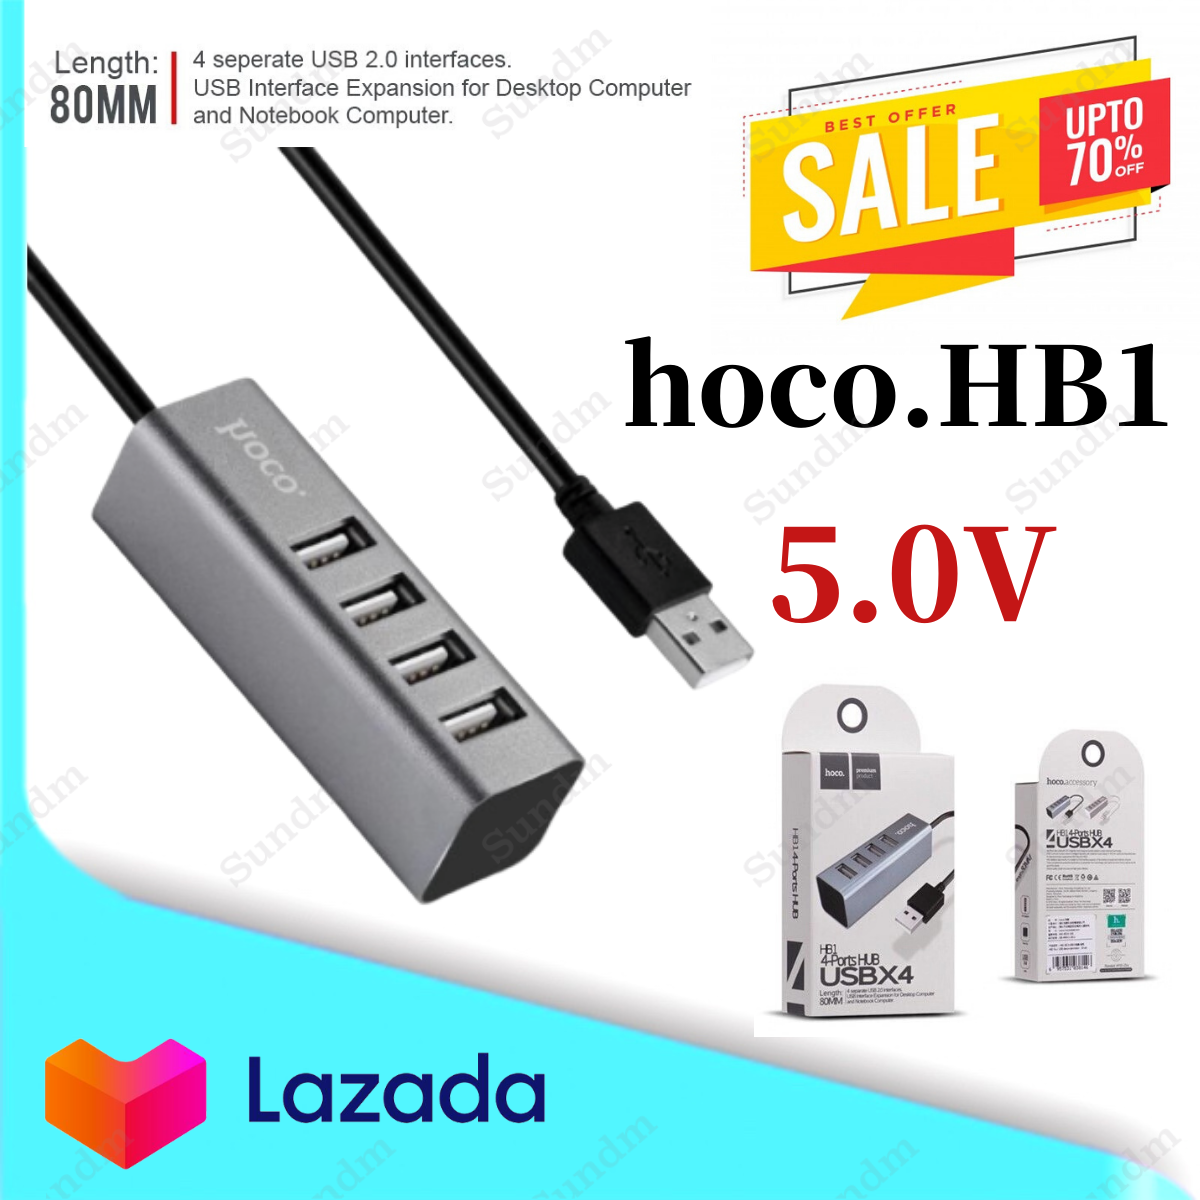 Hoco HB1 Ports HUB อุปกรณ์เพิ่มช่อง USB ใช้งานง่าย สินค้าของแท้100%